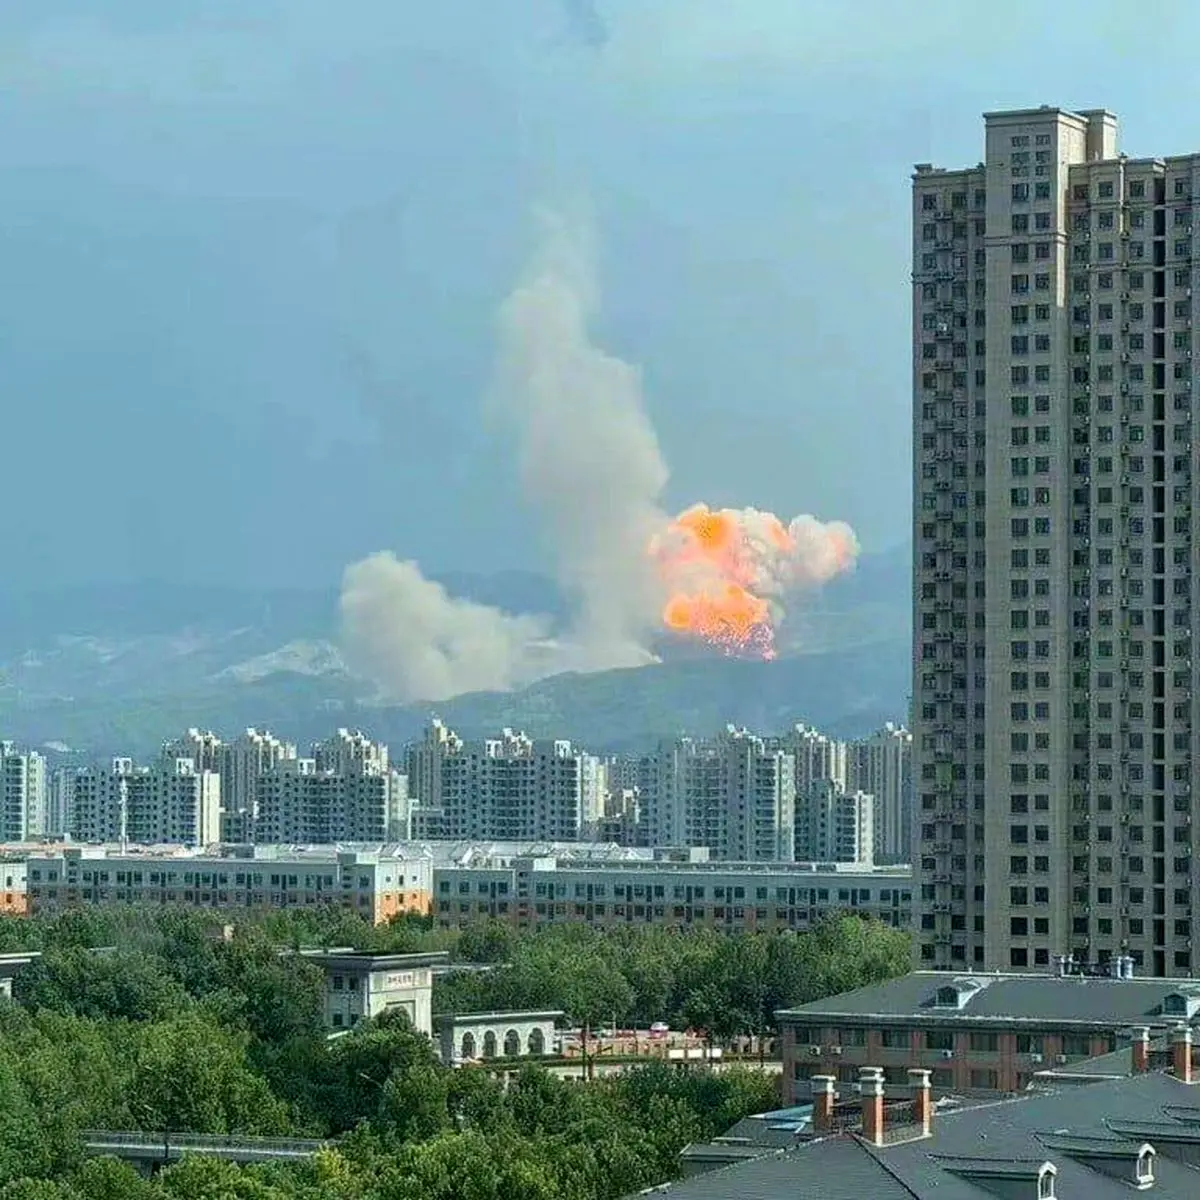 موشک چینی هنگام آزمایش سقوط کرد + عکس 